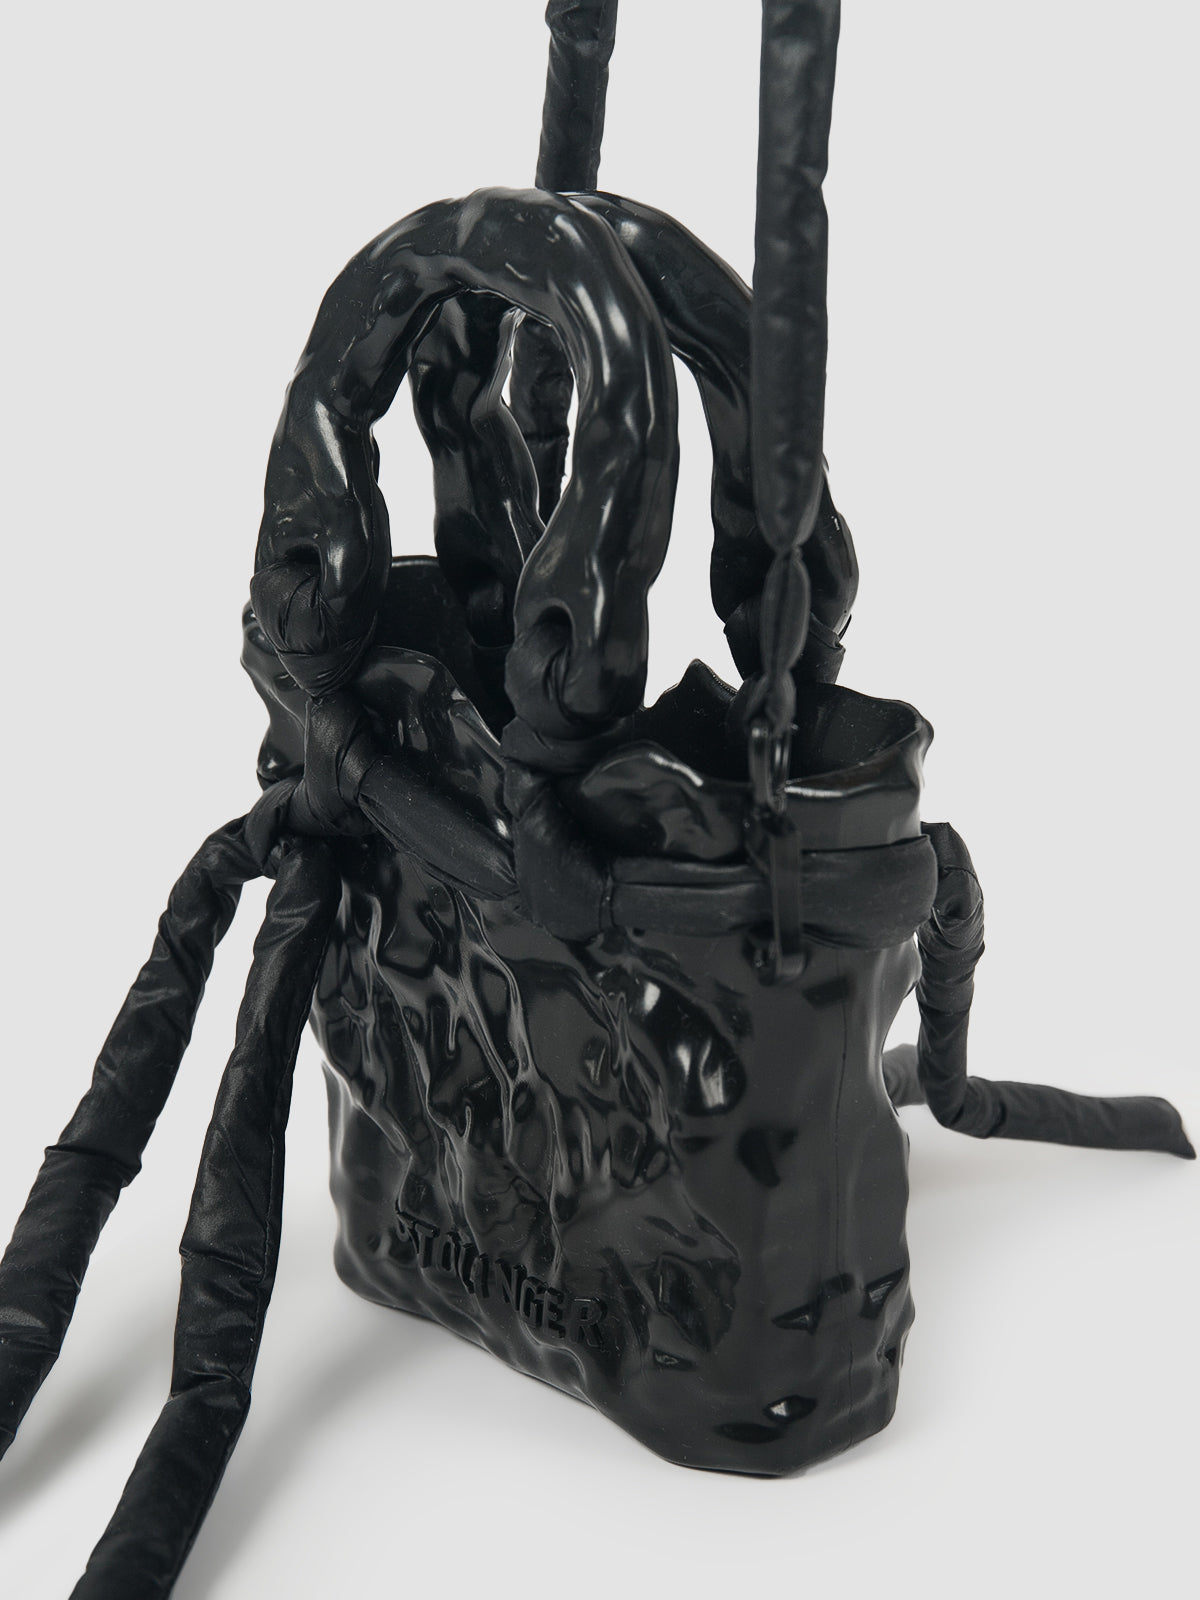 Black signature ceramic bag